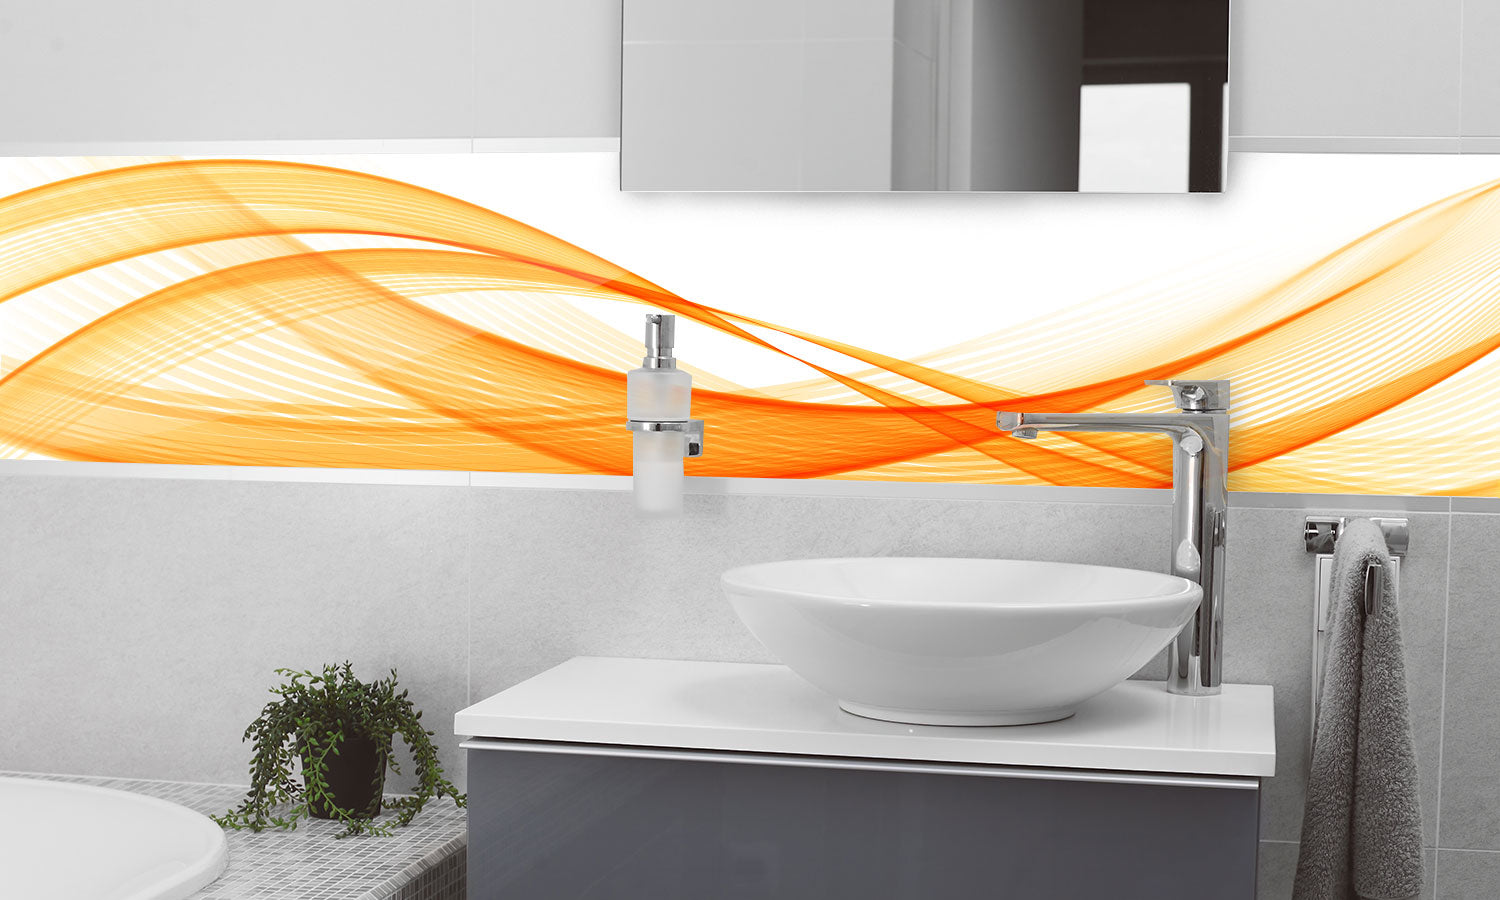 Kuhinjski paneli   Orange strip - Stekleni / PVC plošče / Pleksi steklo - s tiskom za kuhinjo, Stenske obloge PKU043 - Life-decor.si